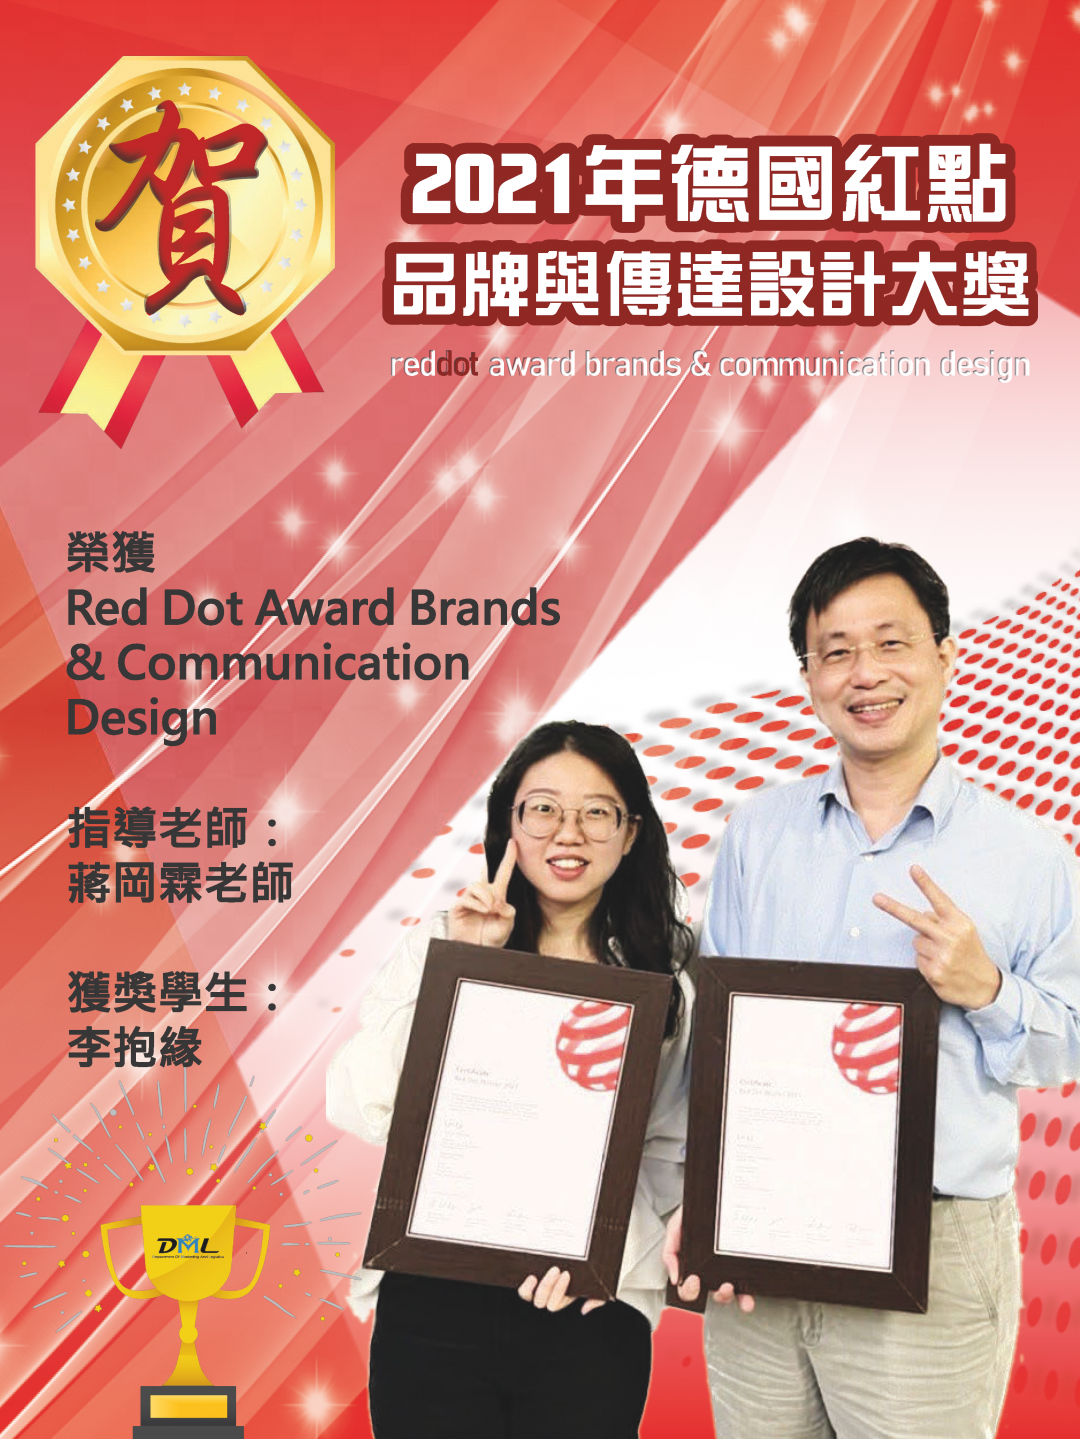 獲獎榮譽解說圖片1；來源：中國科技大學(新竹校區)